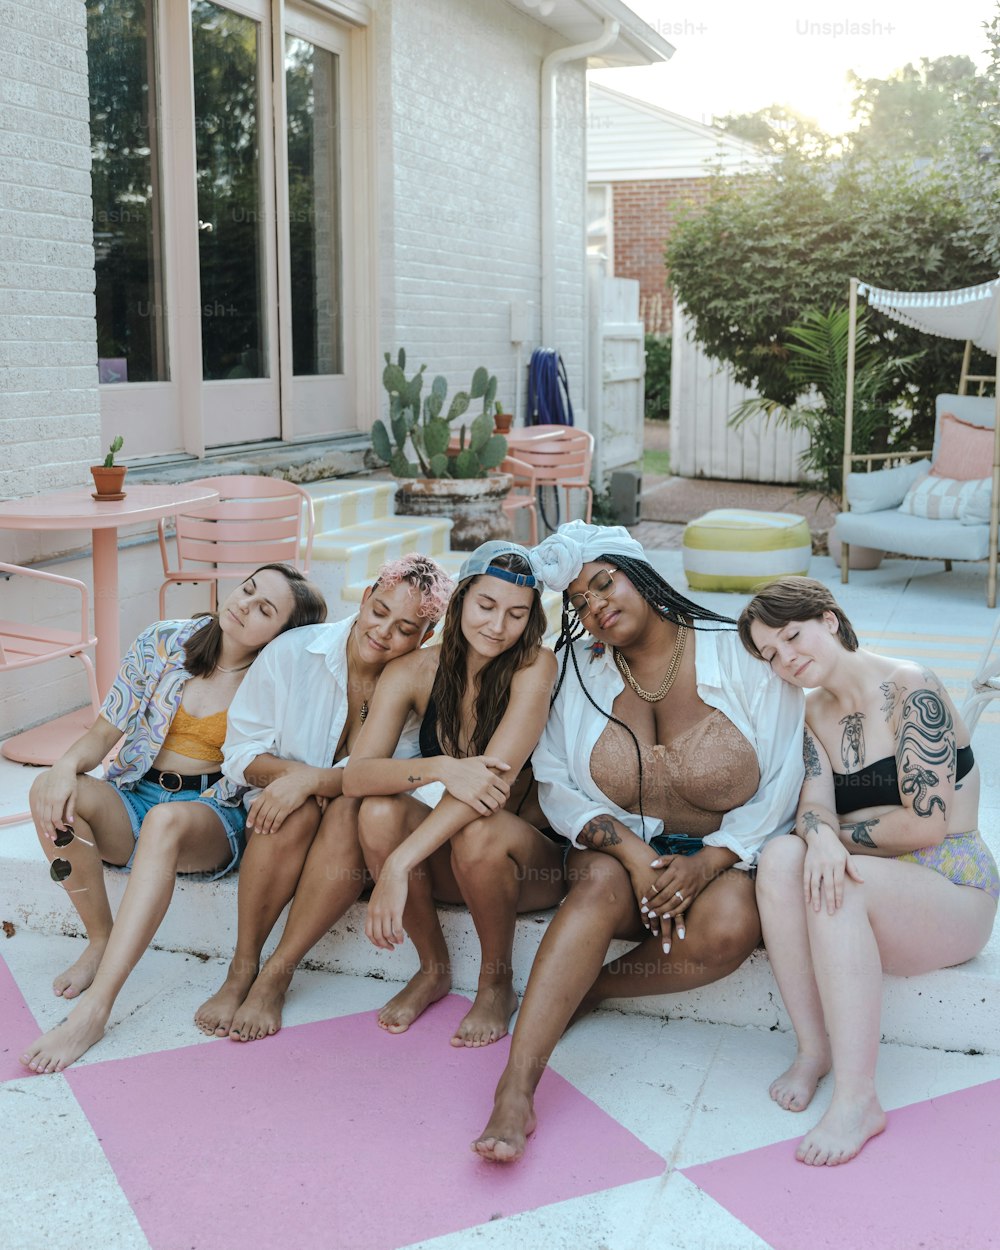 Eine Gruppe von Frauen, die auf einem rosa-weiß karierten Boden sitzen